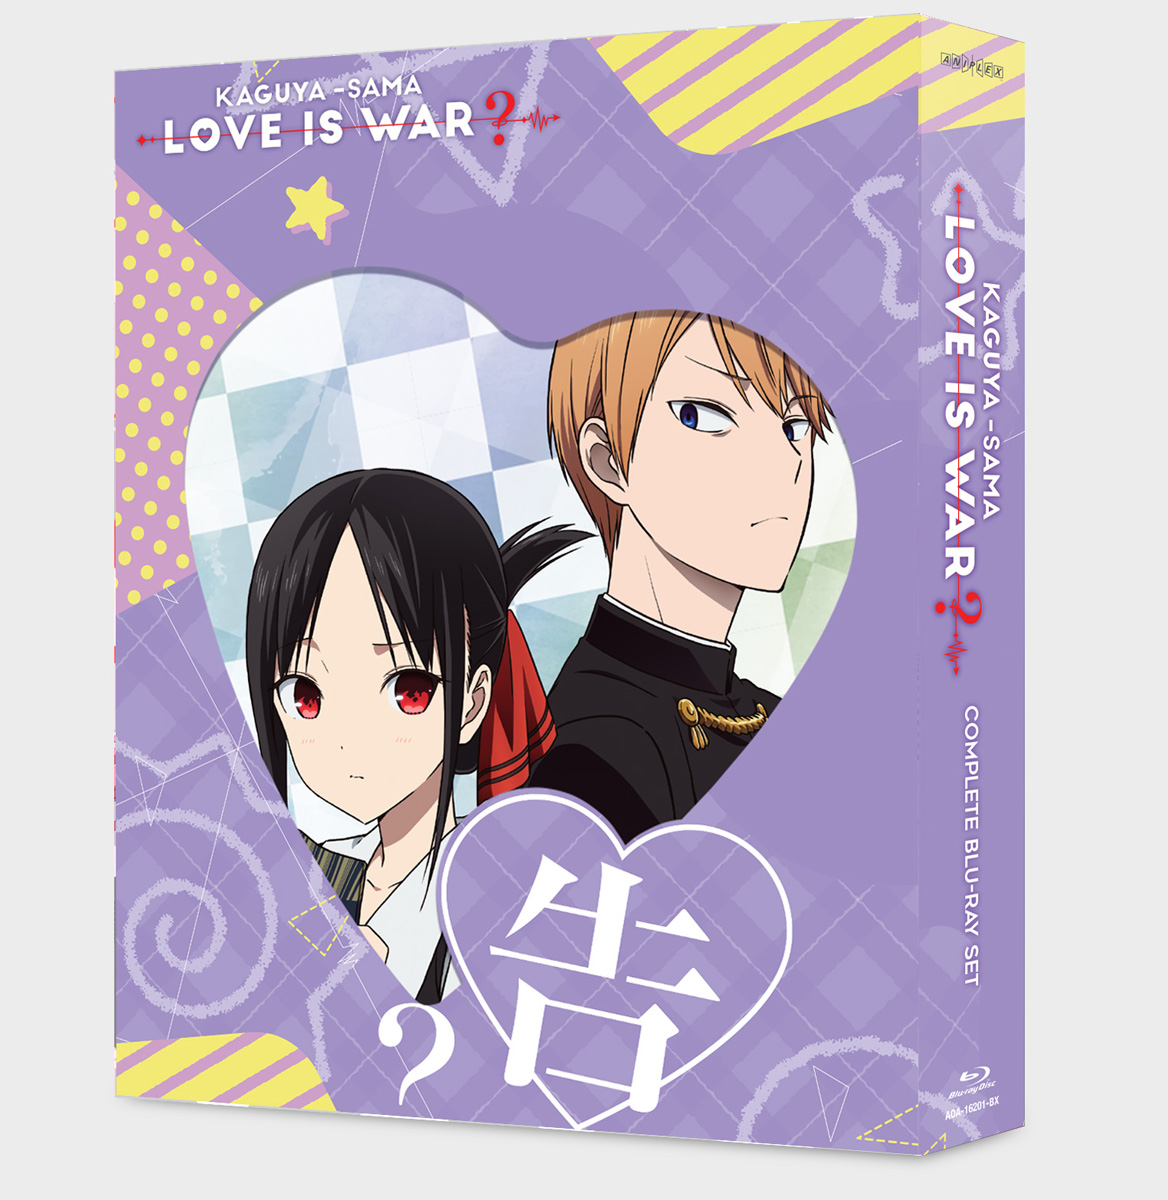 Kaguya-sama Love Is War? Blu-ray | Crunchyroll Store